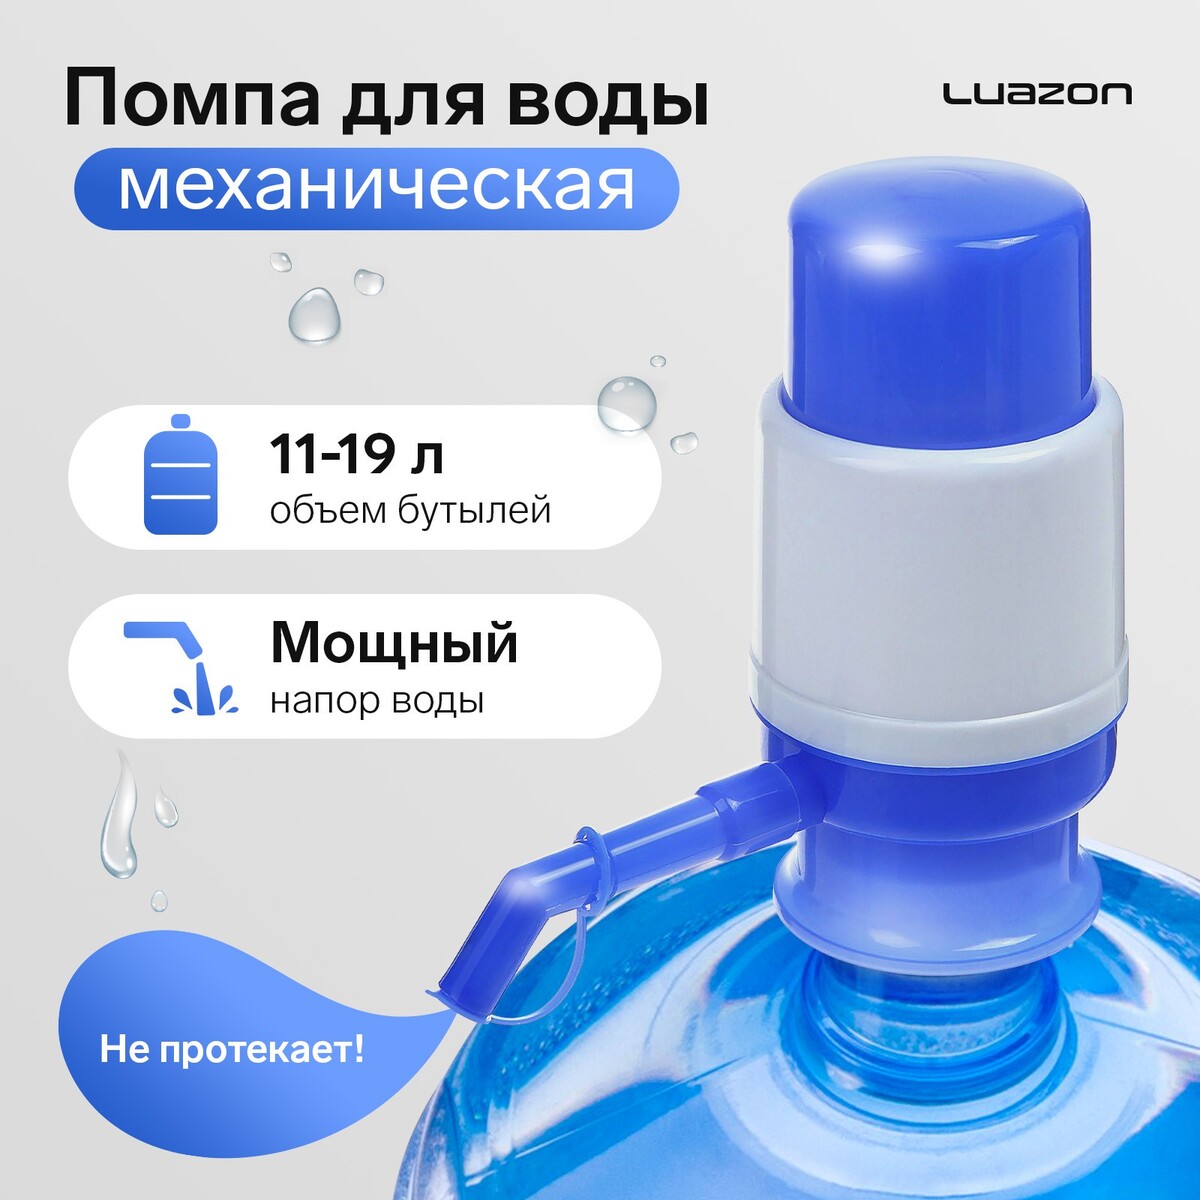 Помпа для воды luazon, механическая, малая, под бутыль от 11 до 19 л, голубая помпа дозатор для сиропа белая 10мл